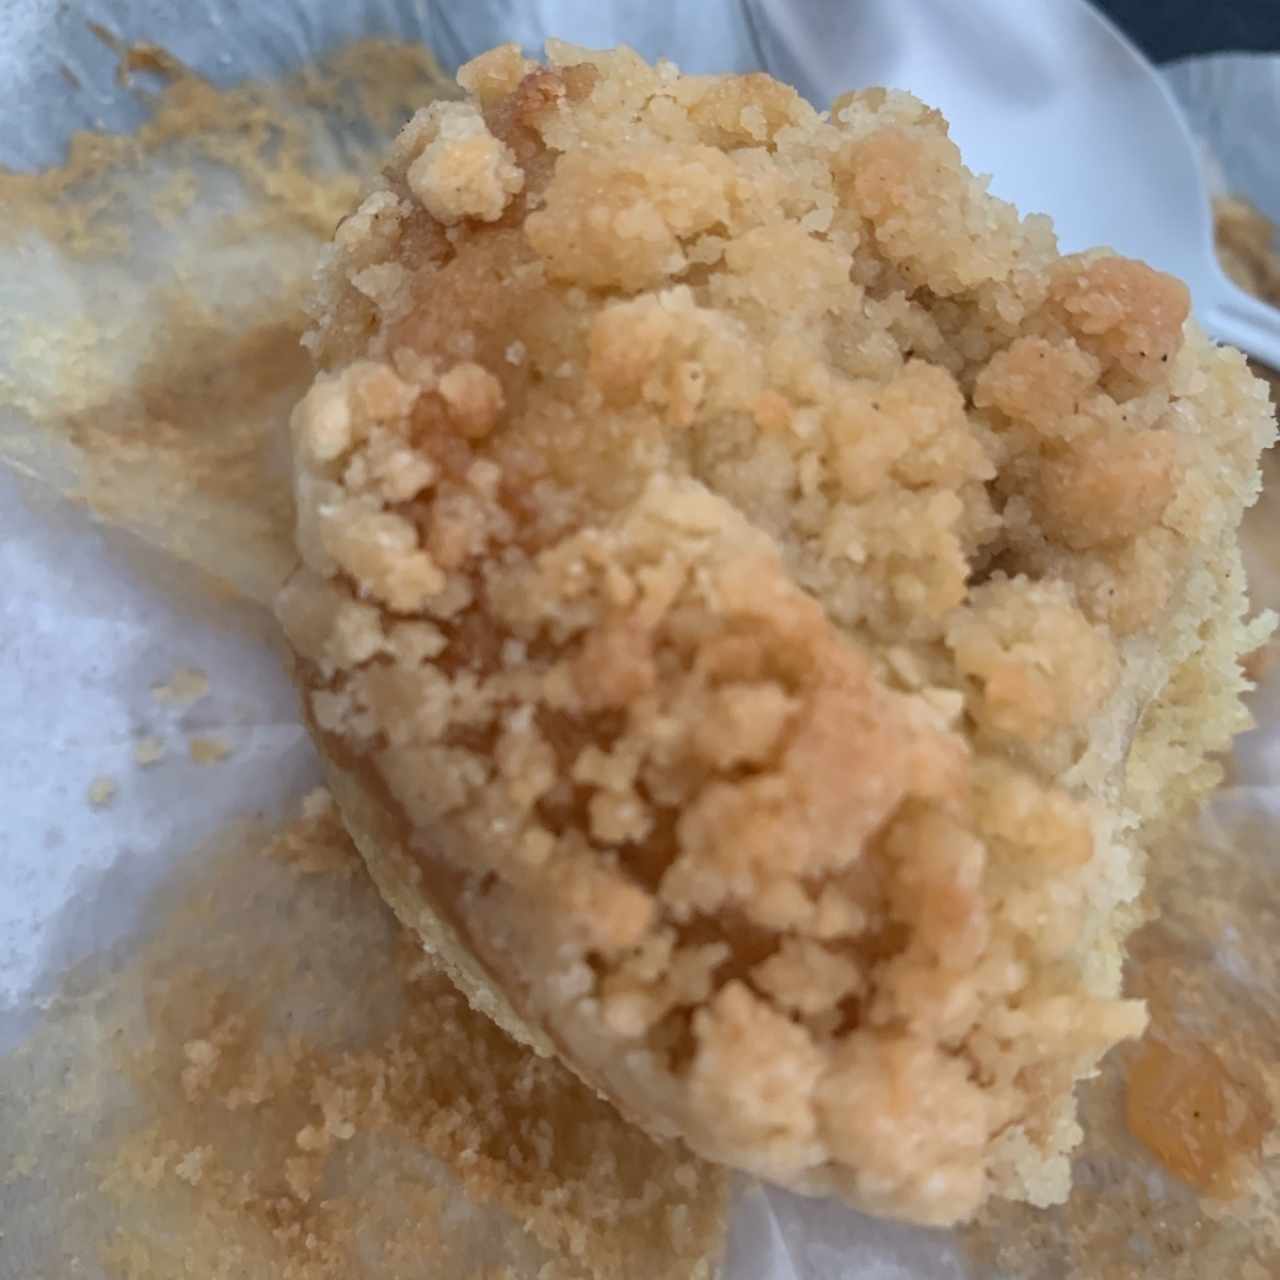 Muffin - Manzana